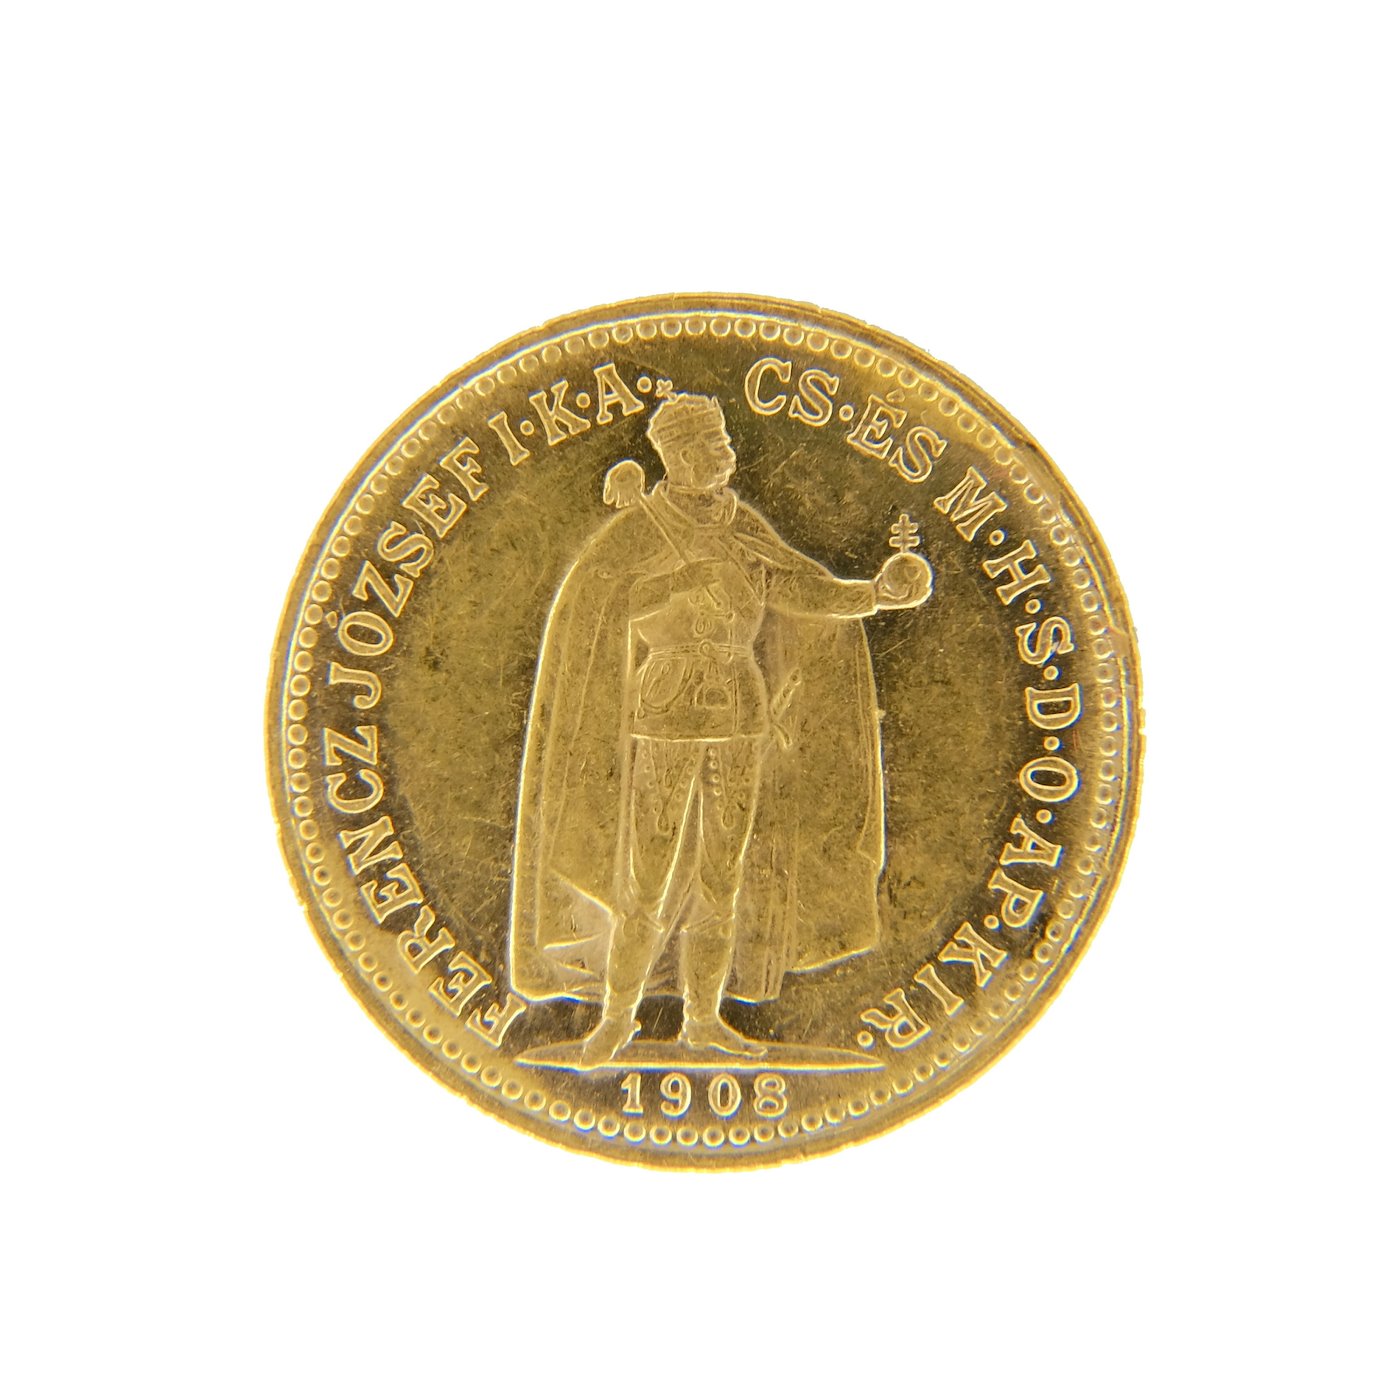 .. - Rakousko Uhersko zlatá 10 Koruna 1908 K.B. uherská, zlato 900/1000, hrubá hmotnost mince 3,387g.